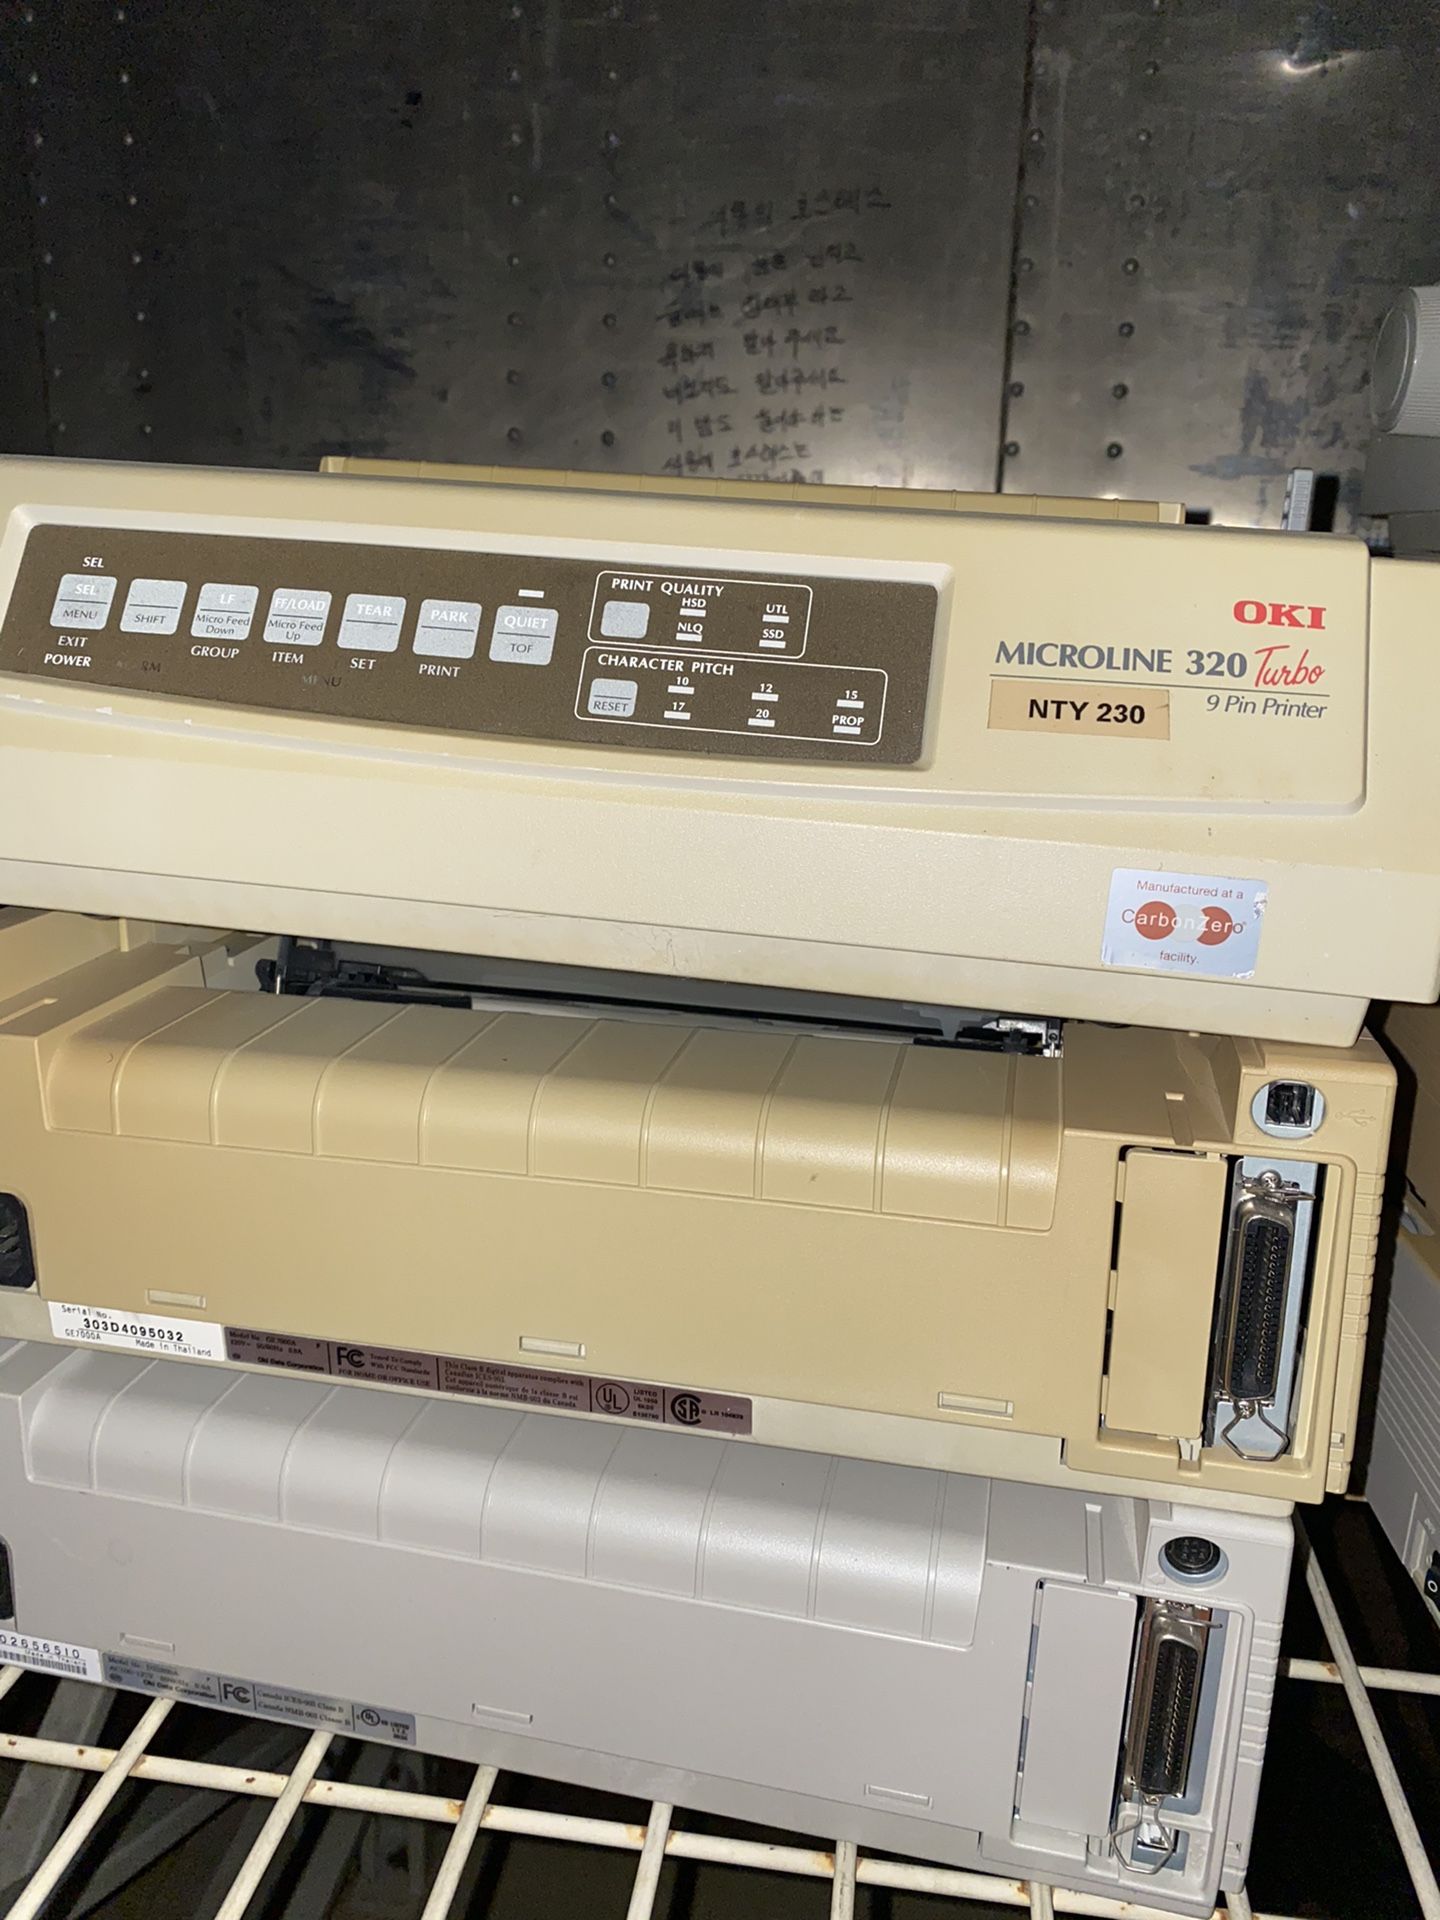 17 Pc -Oki Microline 320 Turbo 9 pin printer